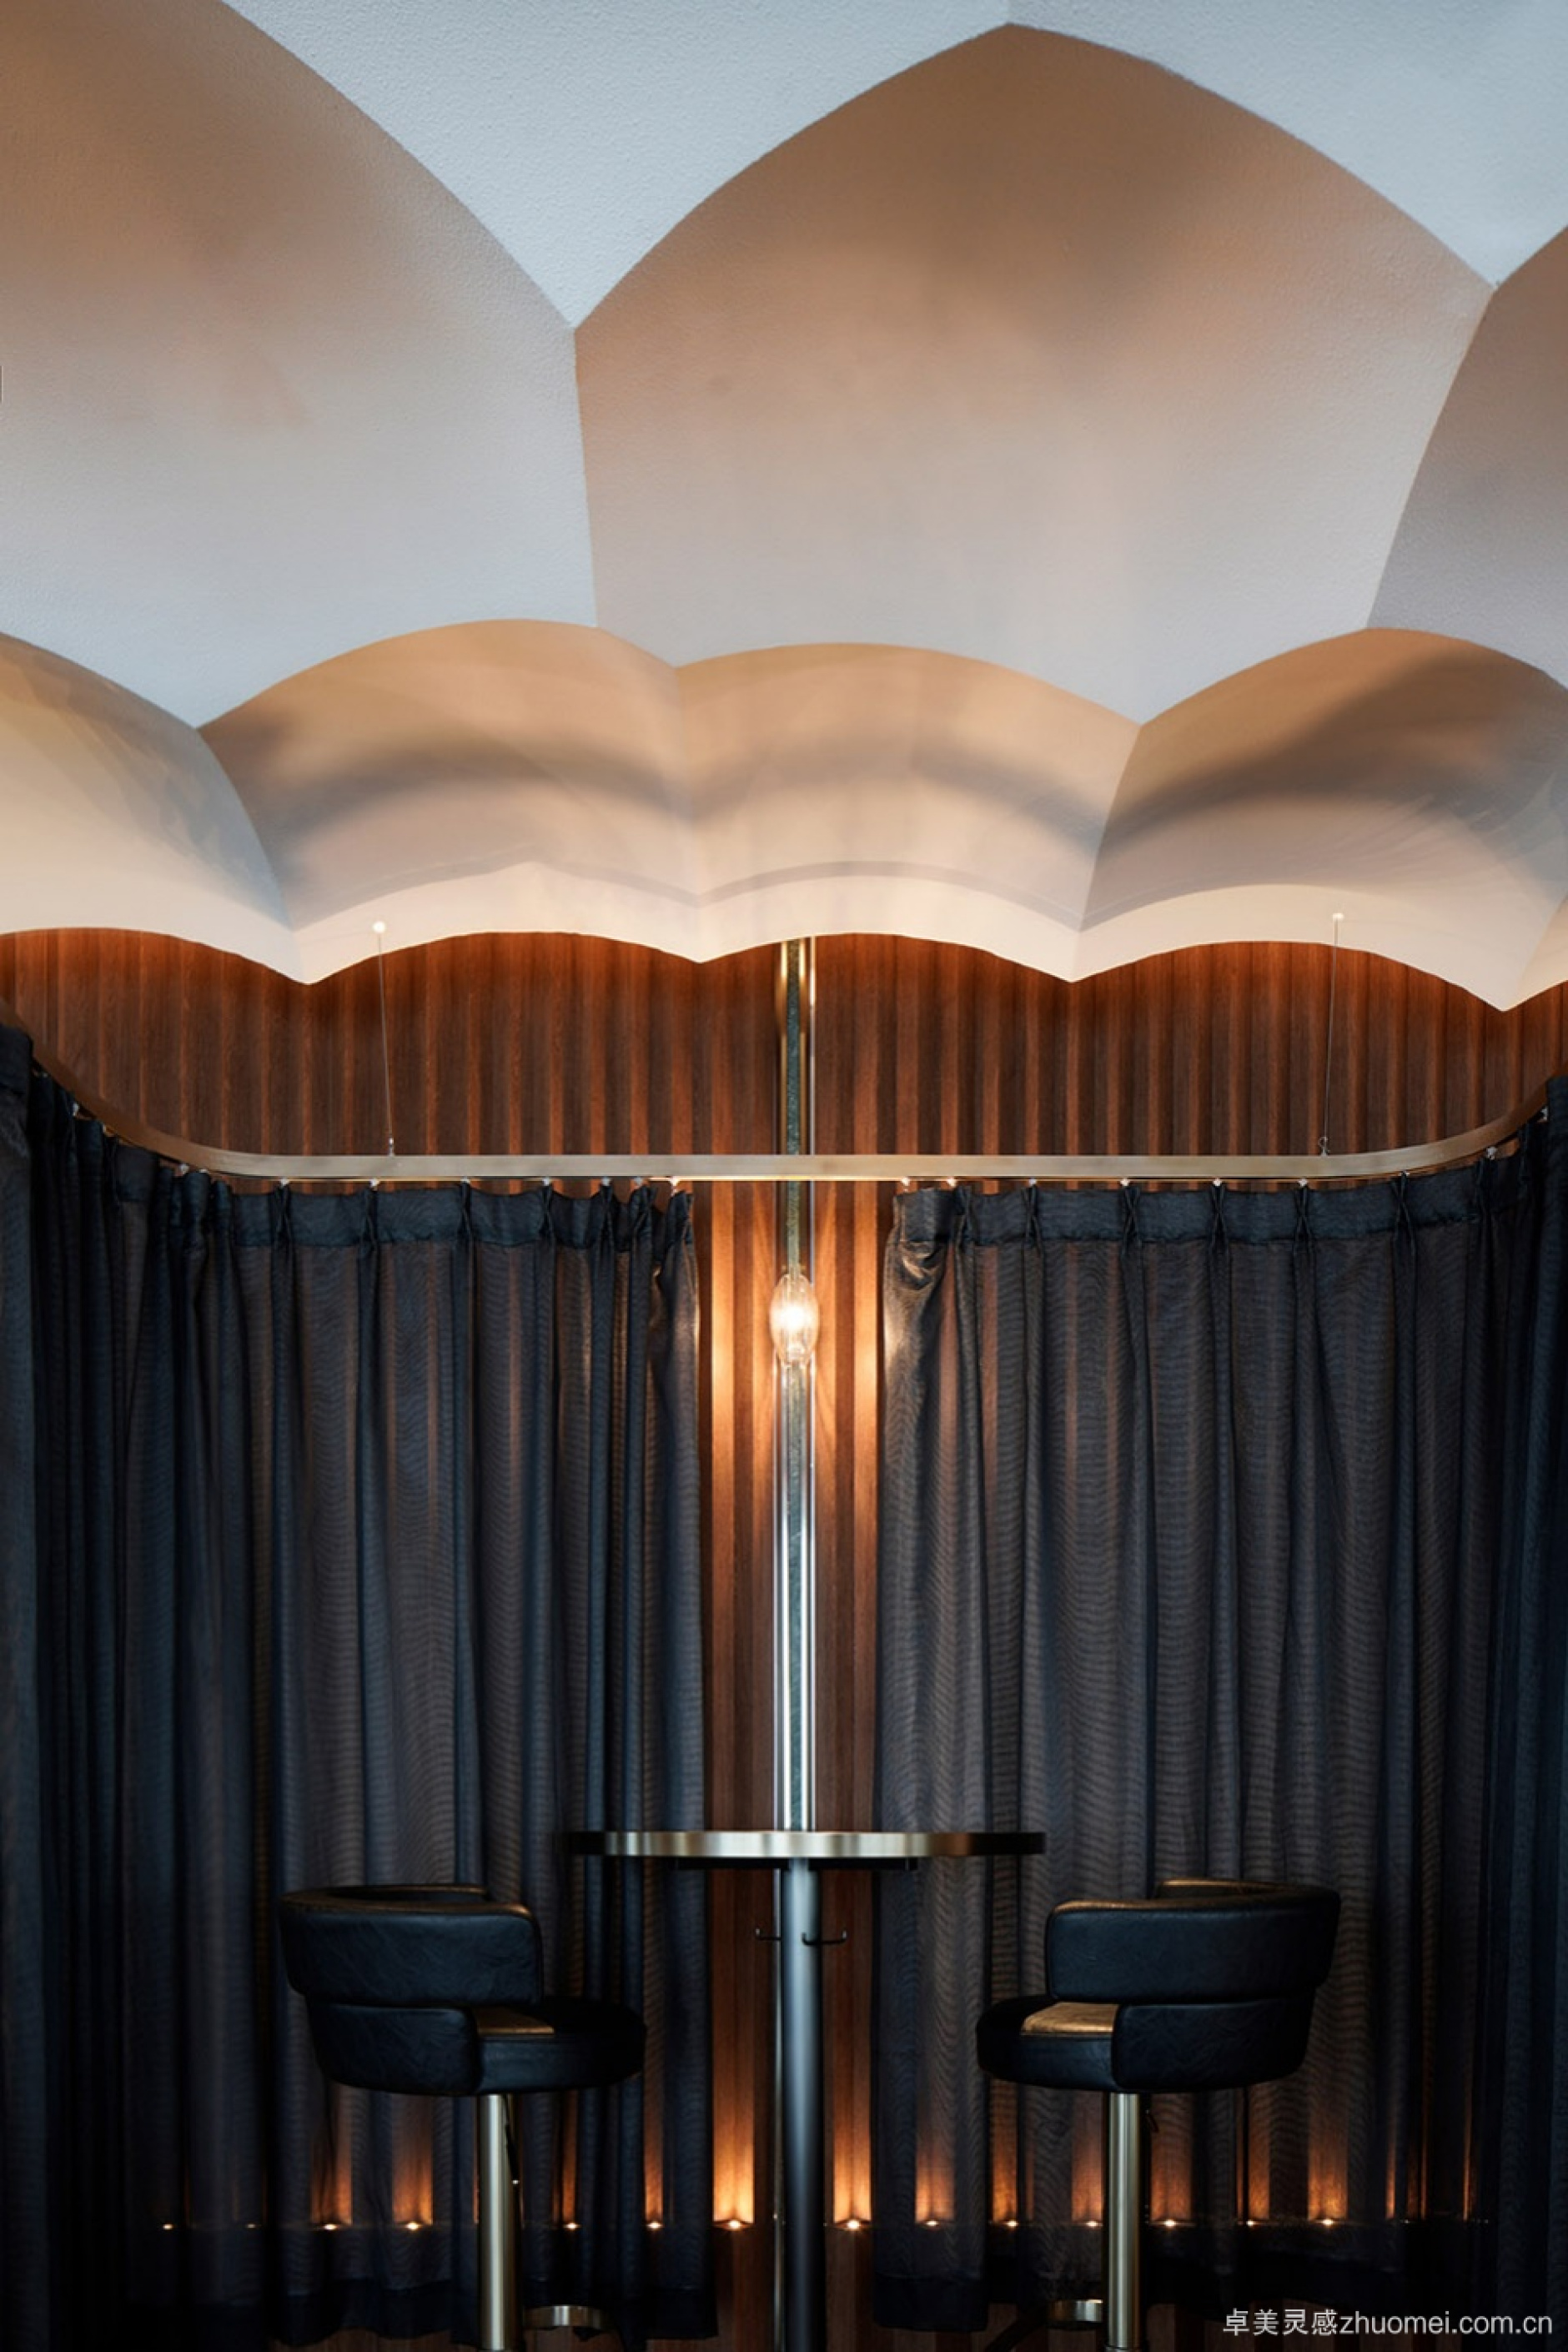 苏州 W 酒店 SOL37 酒廊 | 独特的空间设计与艺术品的完美融合-124